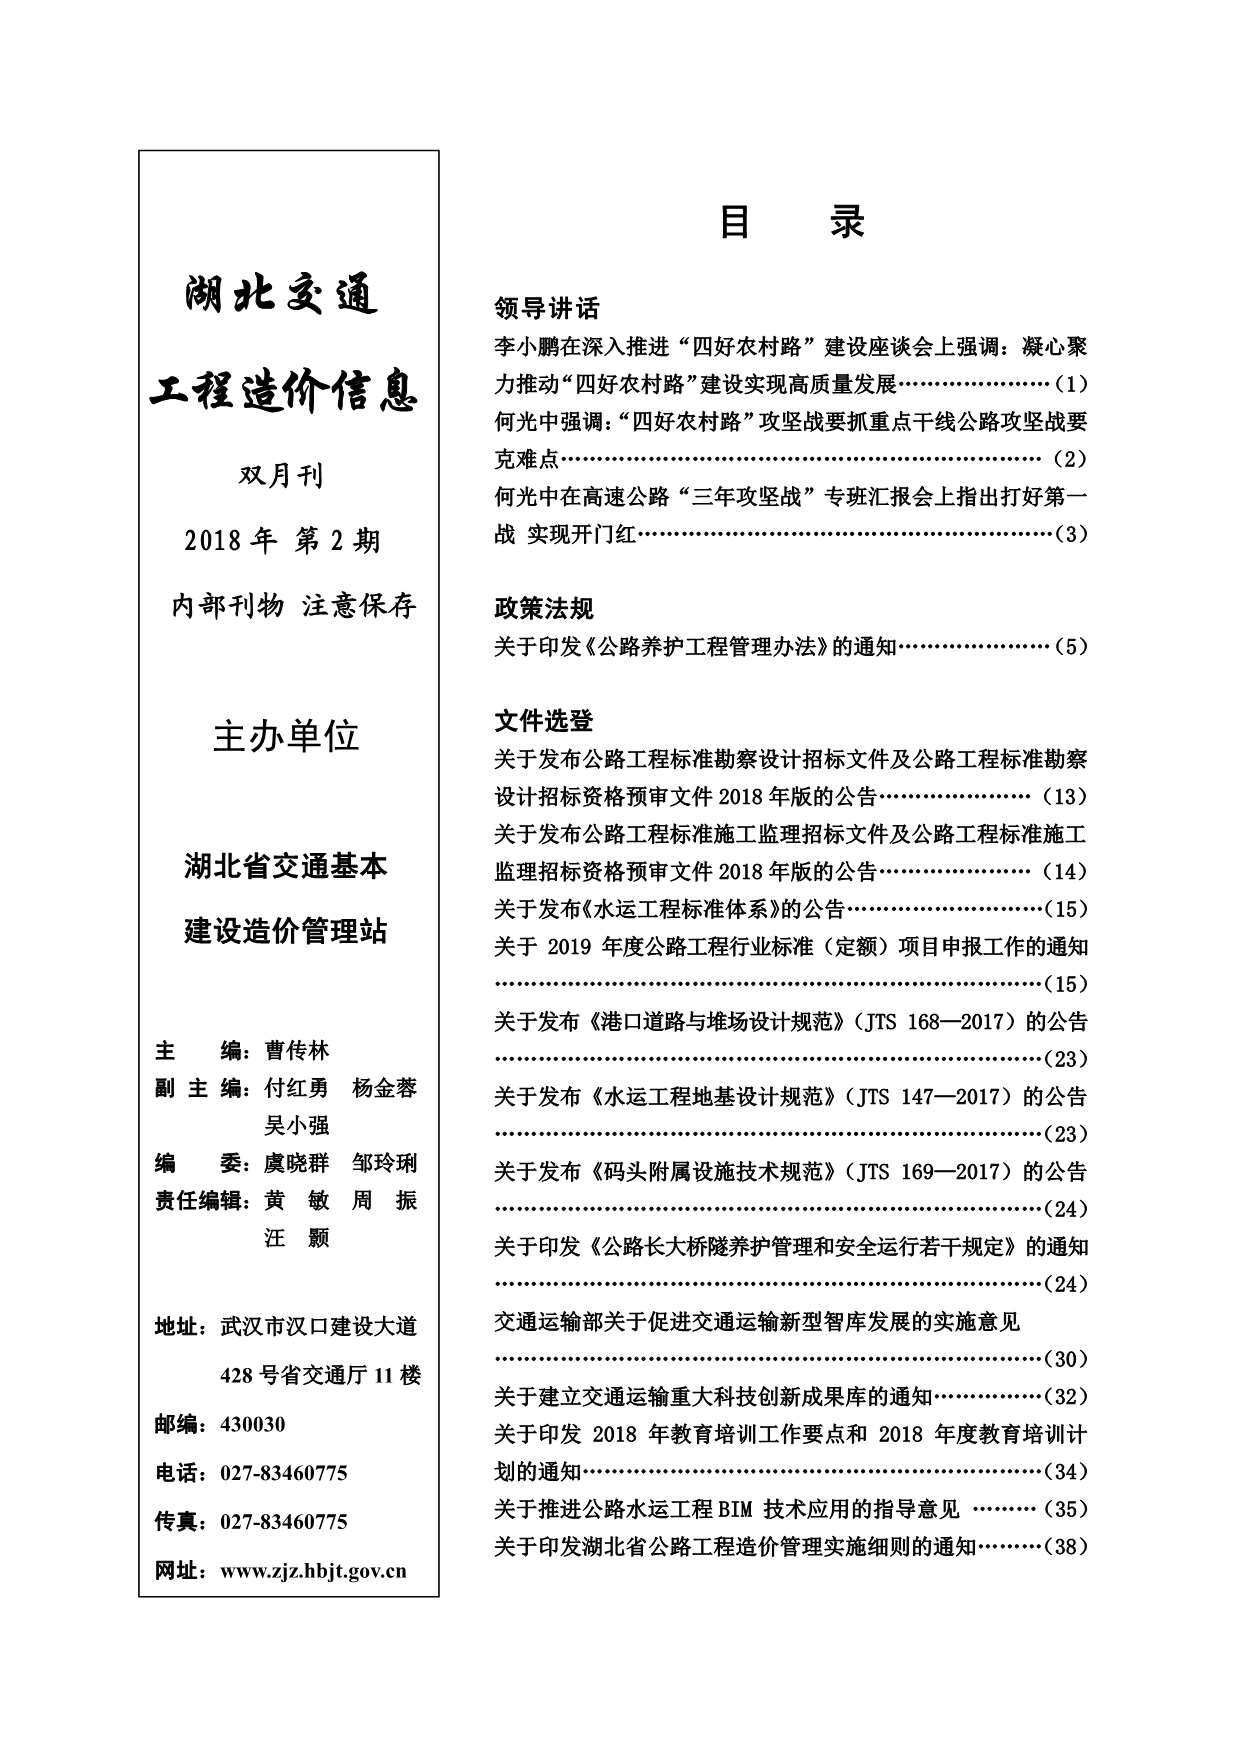 2018年2期湖北省交通交通工程造价信息期刊